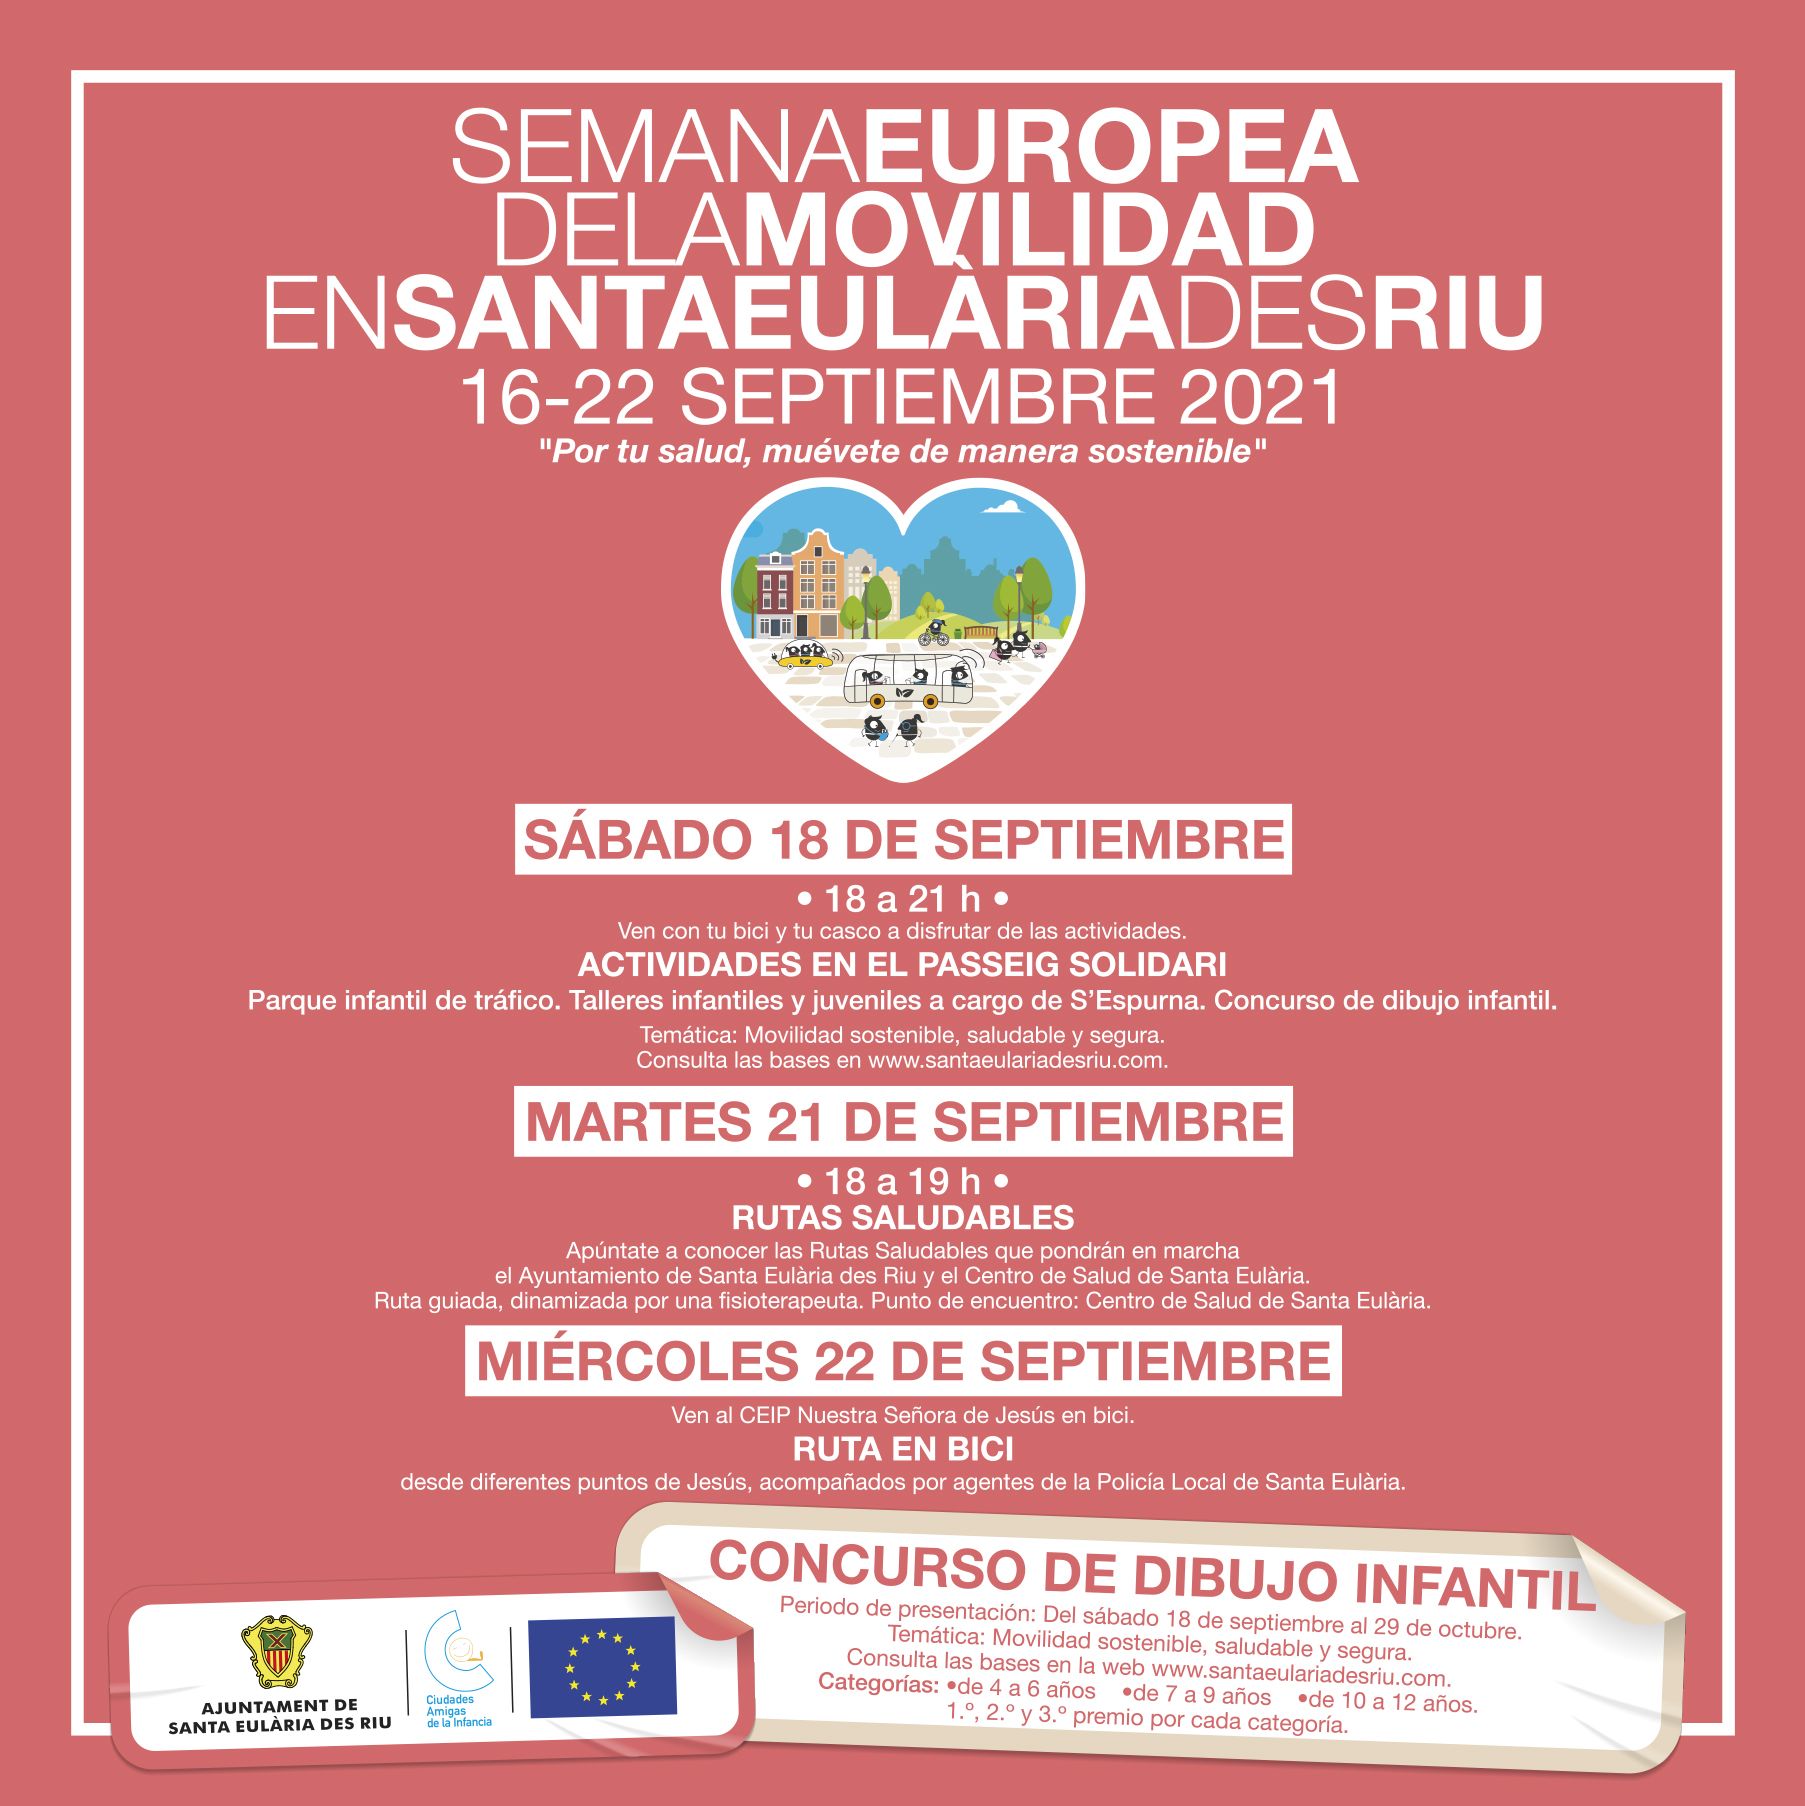 Educación Vial y rutas saludables para la Semana Europea de la Movilidad en Santa Eulària des Riu